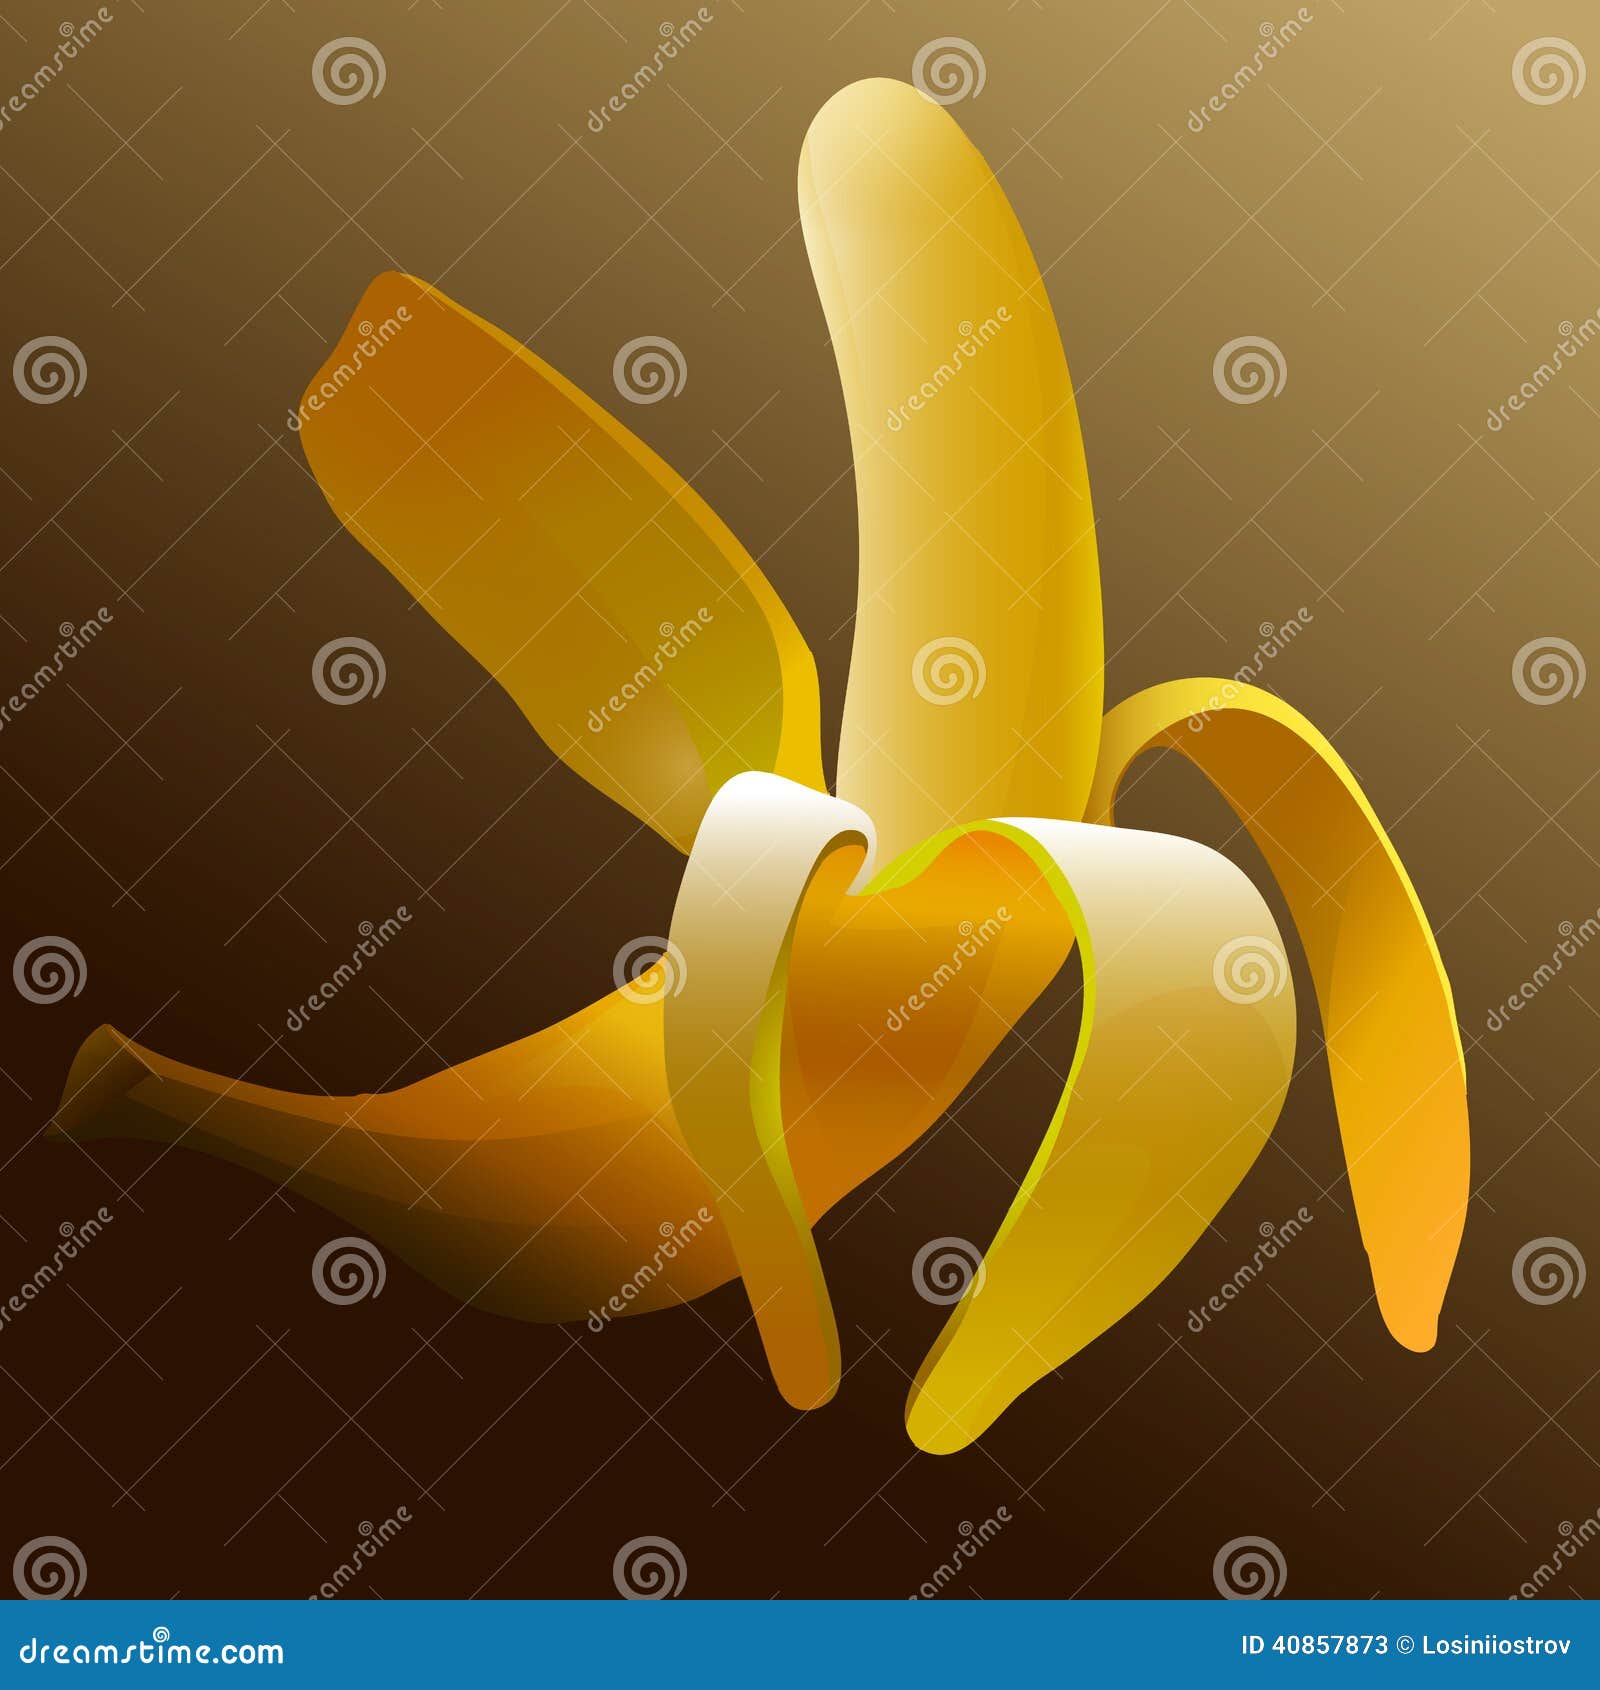 Essbare abgezogene gelbe Bananenschale